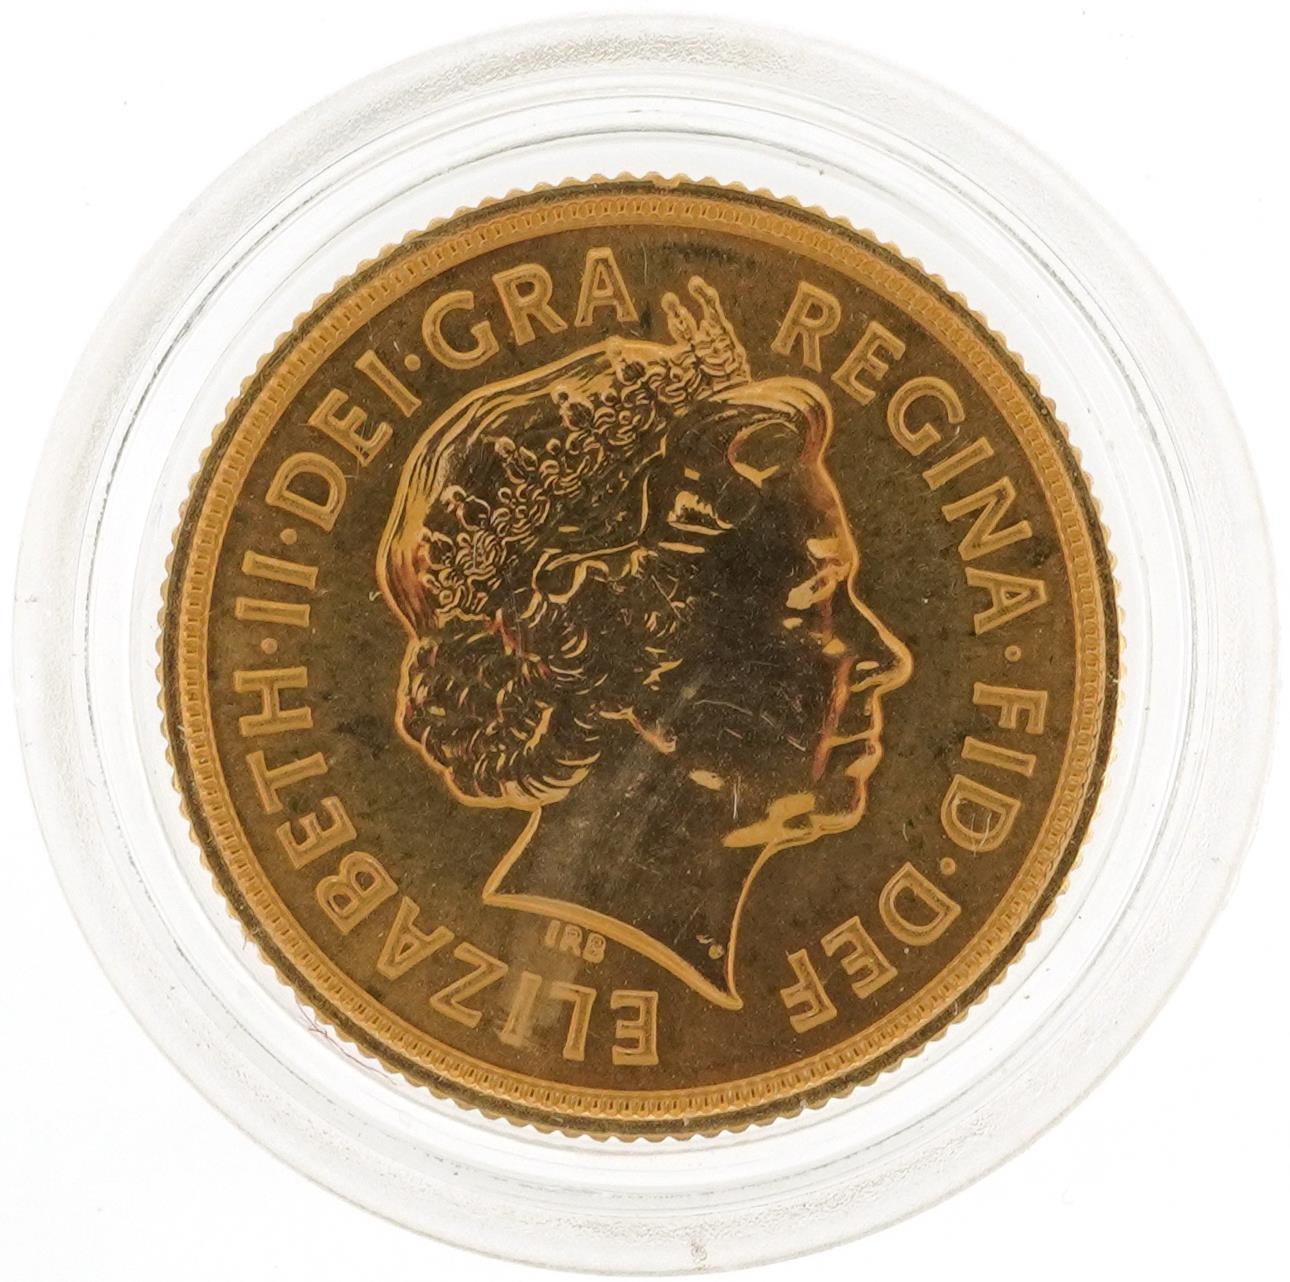 Elizabeth II 2012 gold sovereign - Image 2 of 2